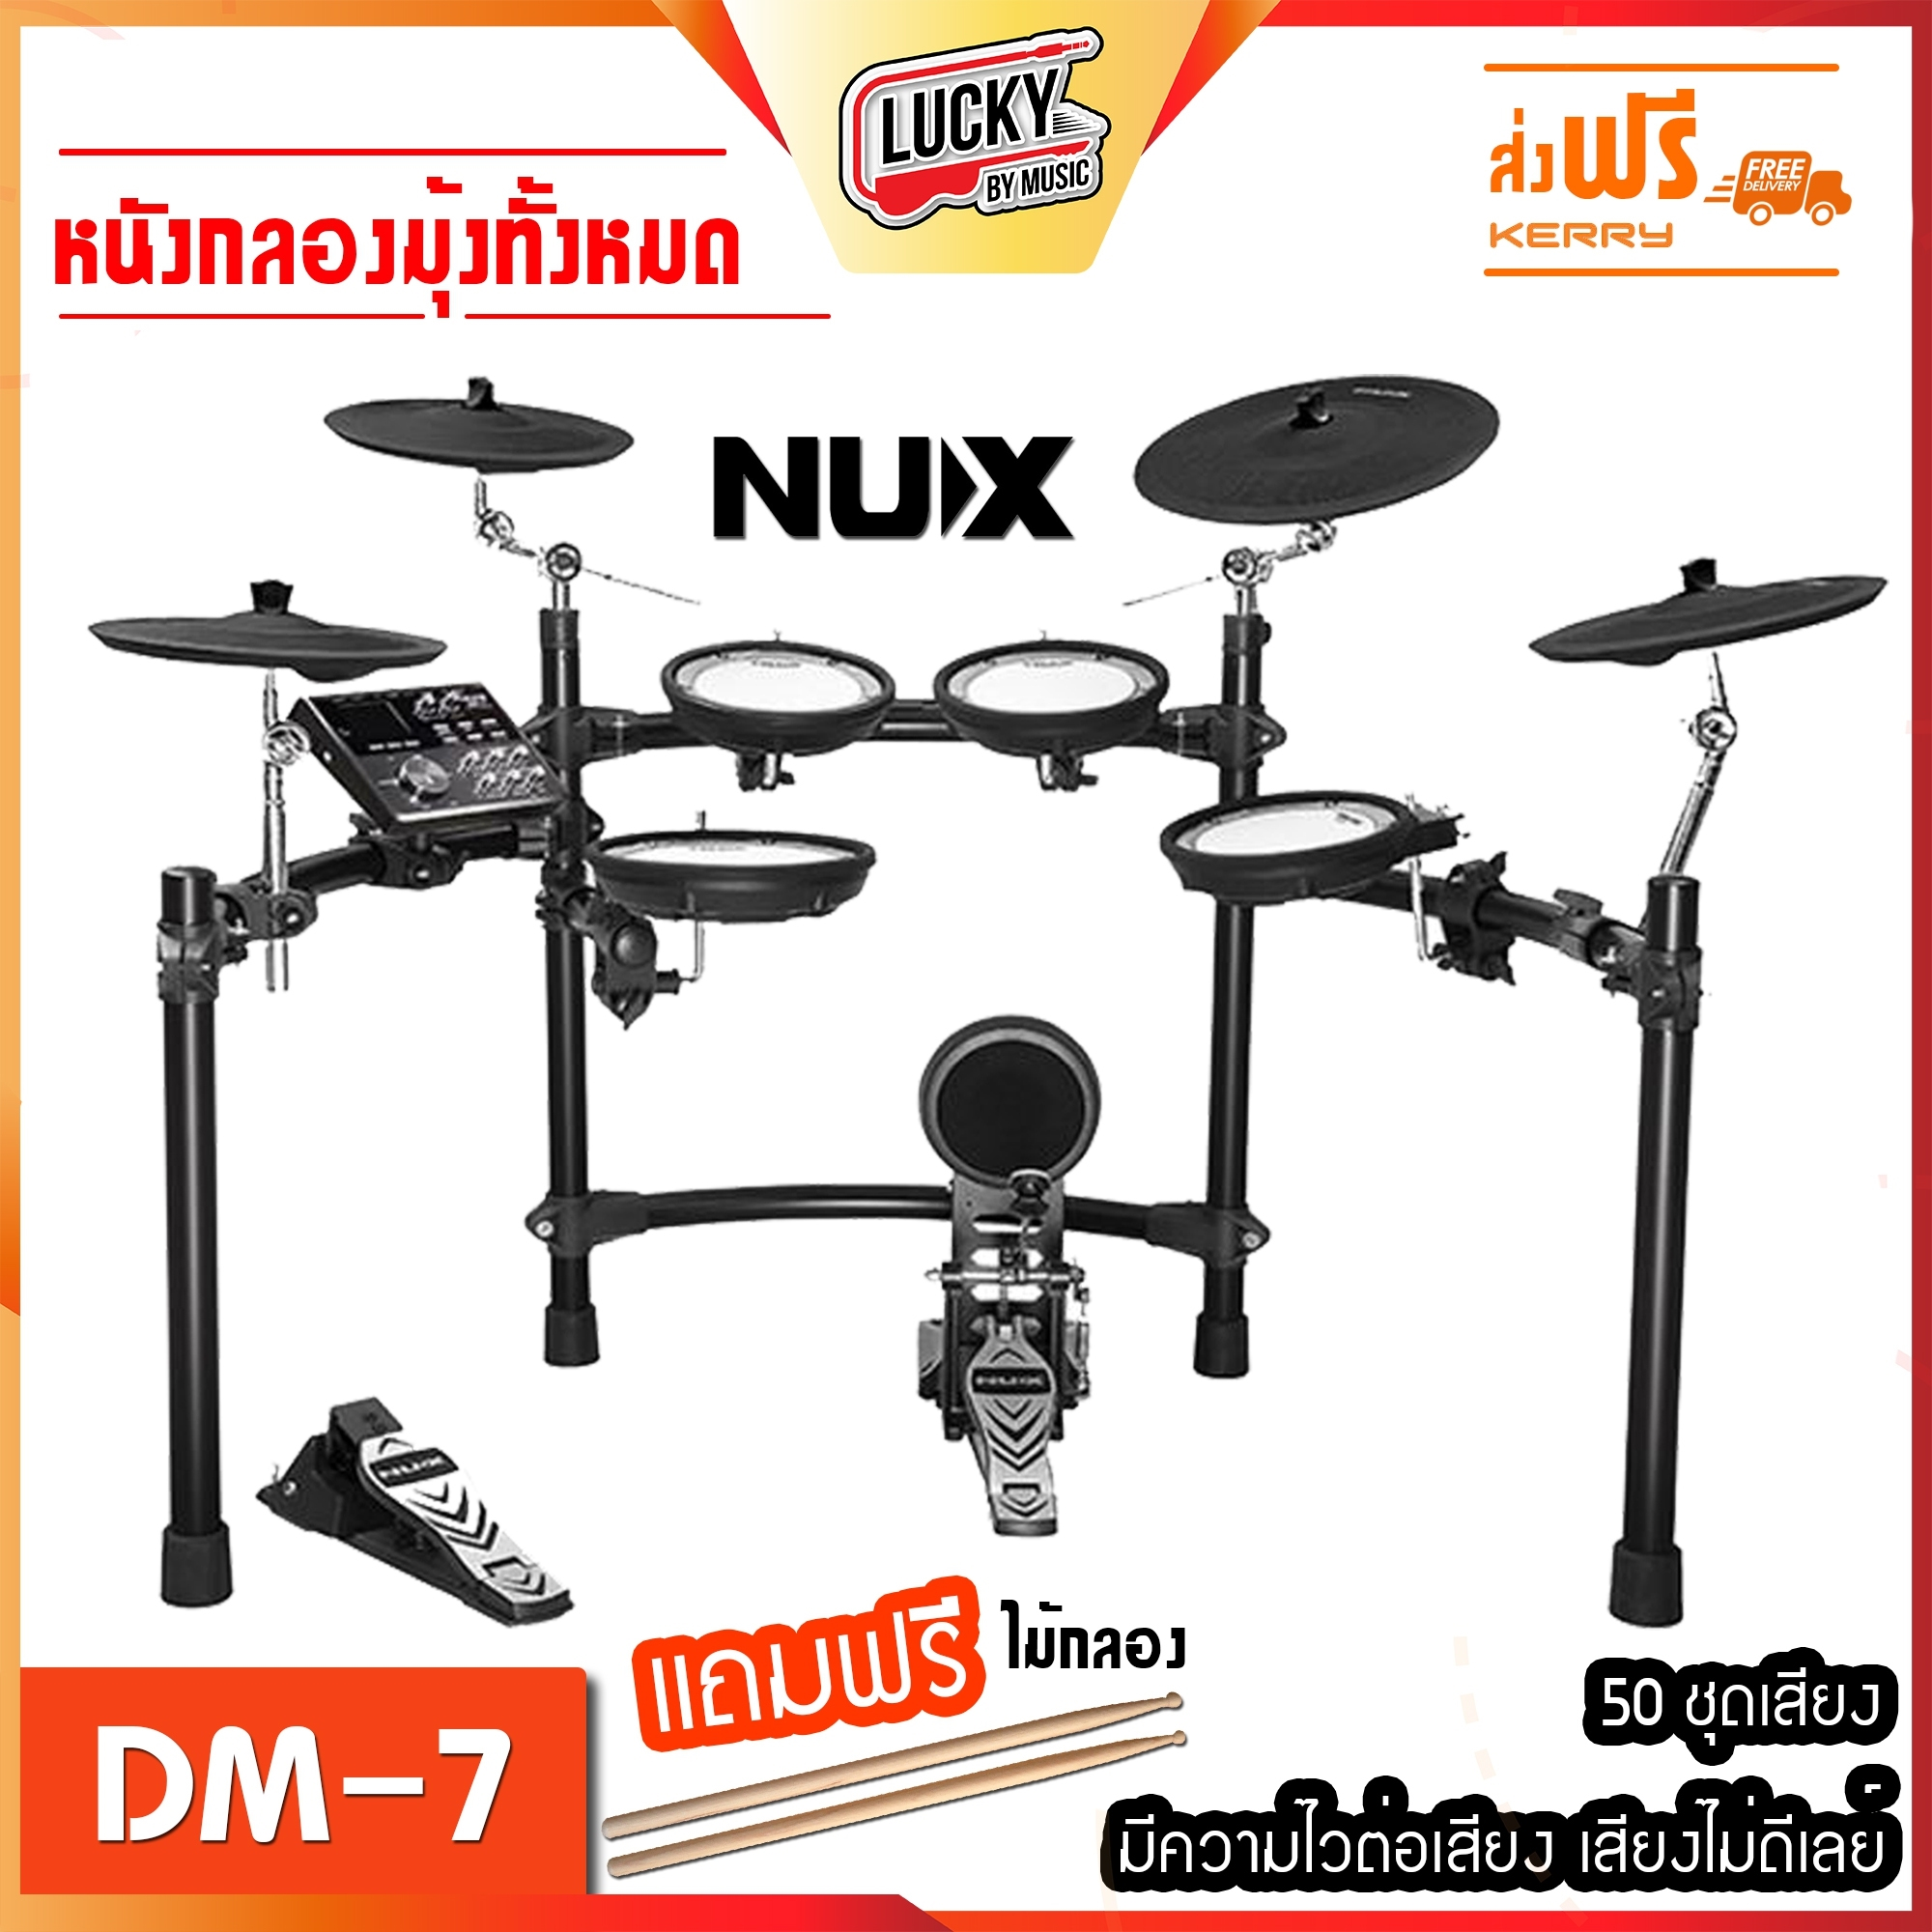 กลองไฟฟ้า NUX DM-7 Digital Drum Kit หนังมุ้ง แป้นกระเดื่อง รองรับกระเดื่องคู่ ส่งฟรีเคอรี่ - ลักกี้บายมิวสิค